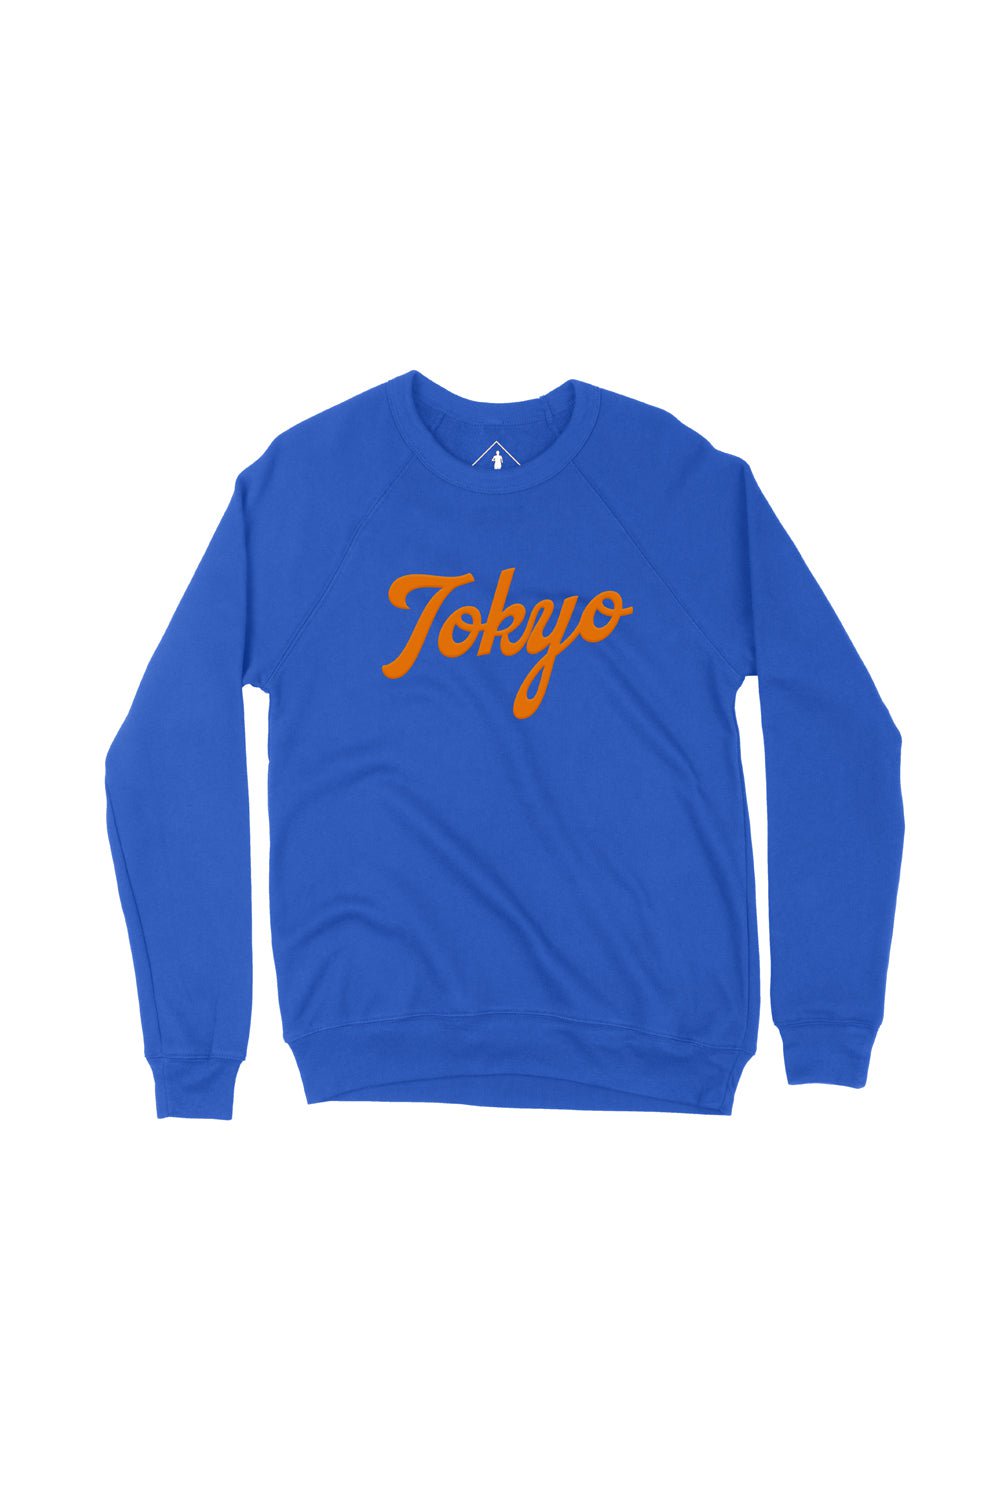 Sarah Marie Design Studio Sweatshirt Tokyo Sweatshirt